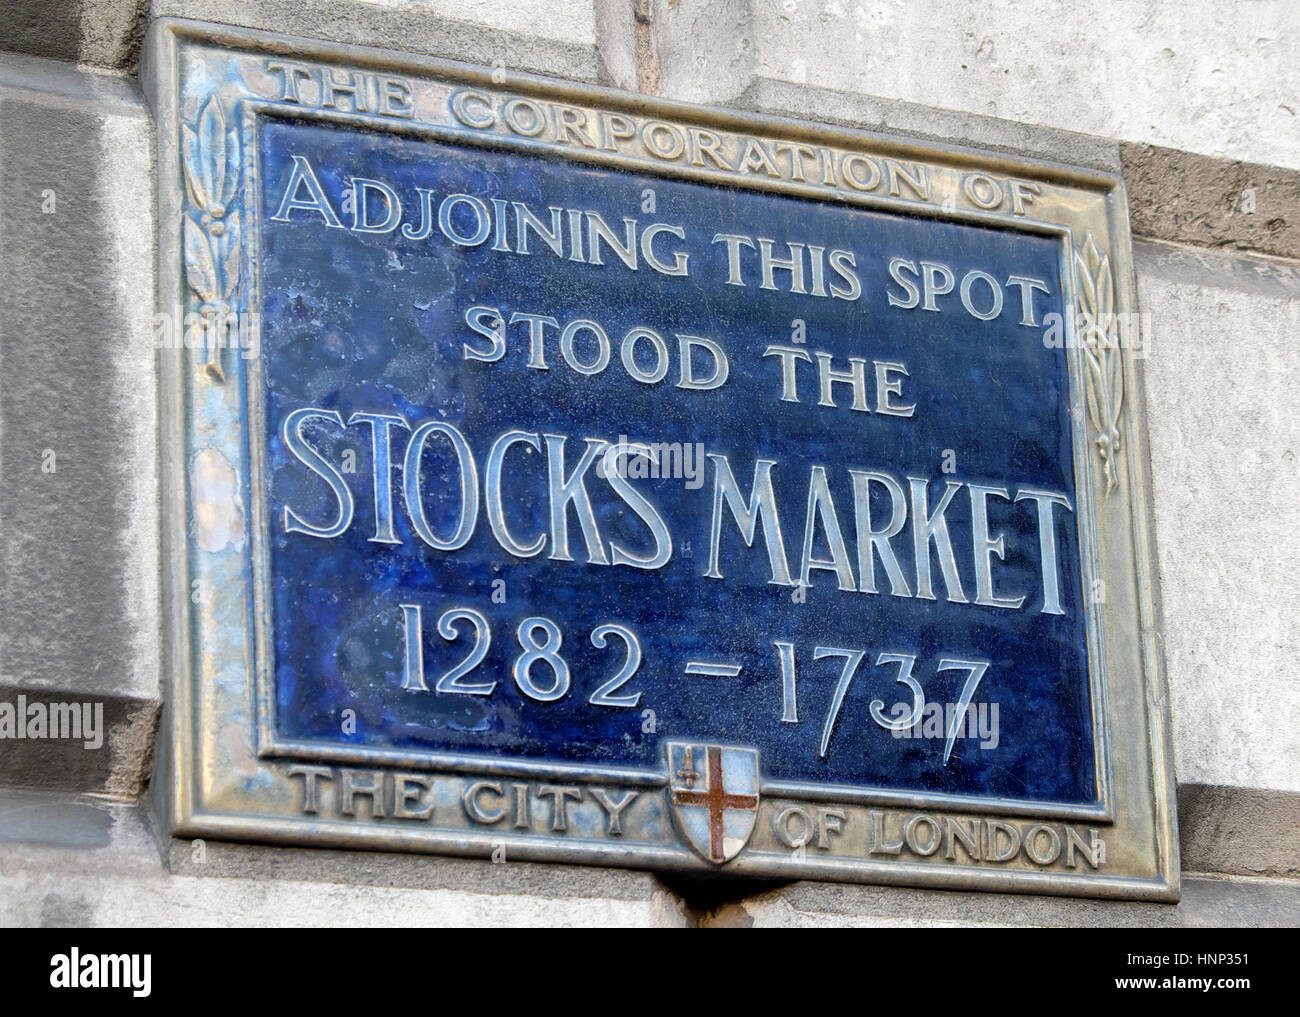 Corporation of London blue plaque pour la bourse de Londres sur le marché les stocks de 1282 - 1737 site sur un bâtiment de la ville de London, UK KATHY DEWITT Banque D'Images